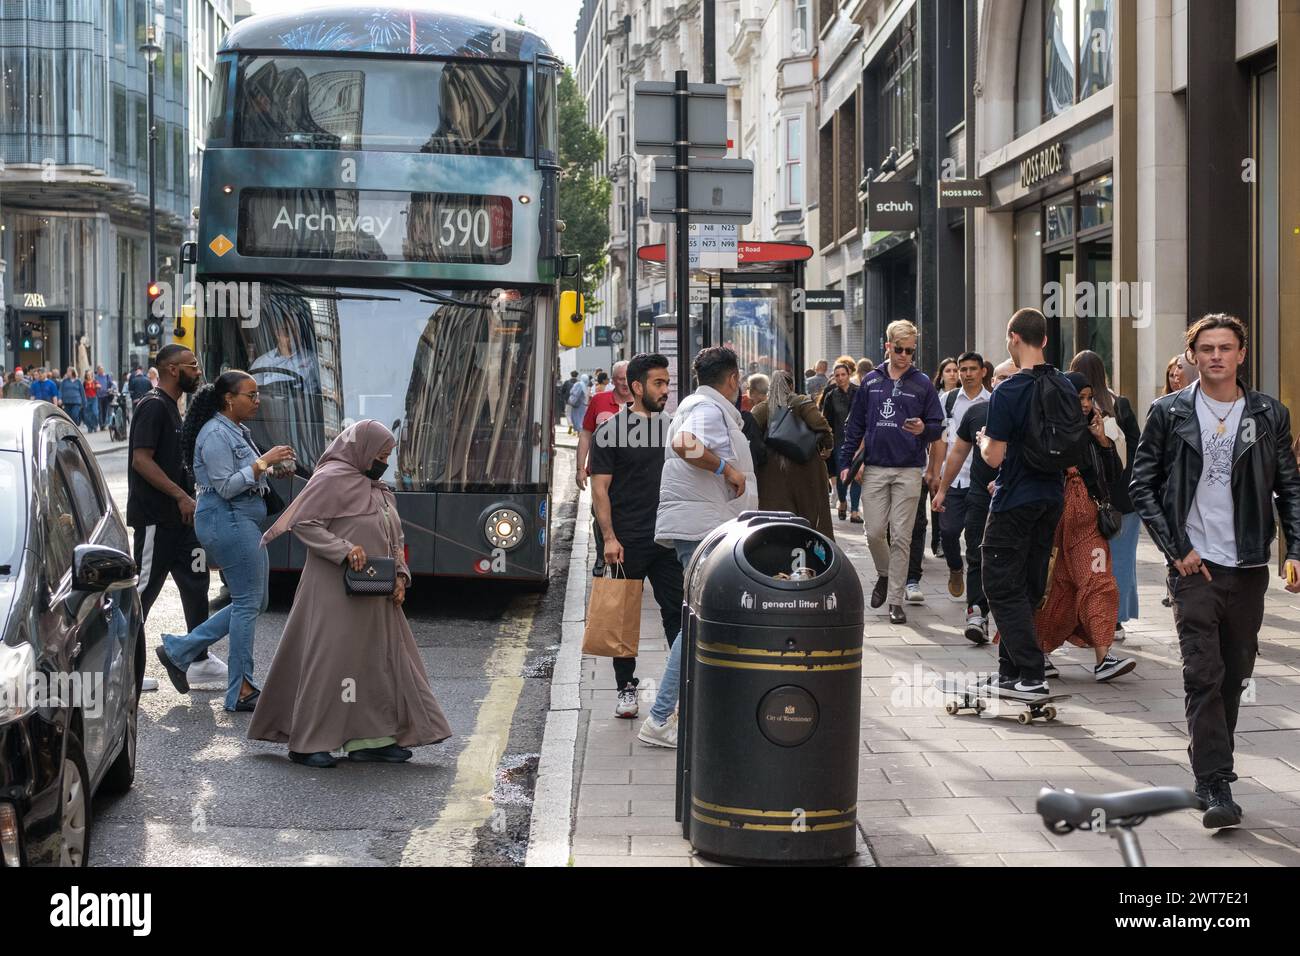 L'autobus 390 è a una fermata di Oxford Street, Londra. La scena è piena di pedoni che attraversano la strada e passano accanto ai negozi. Foto Stock